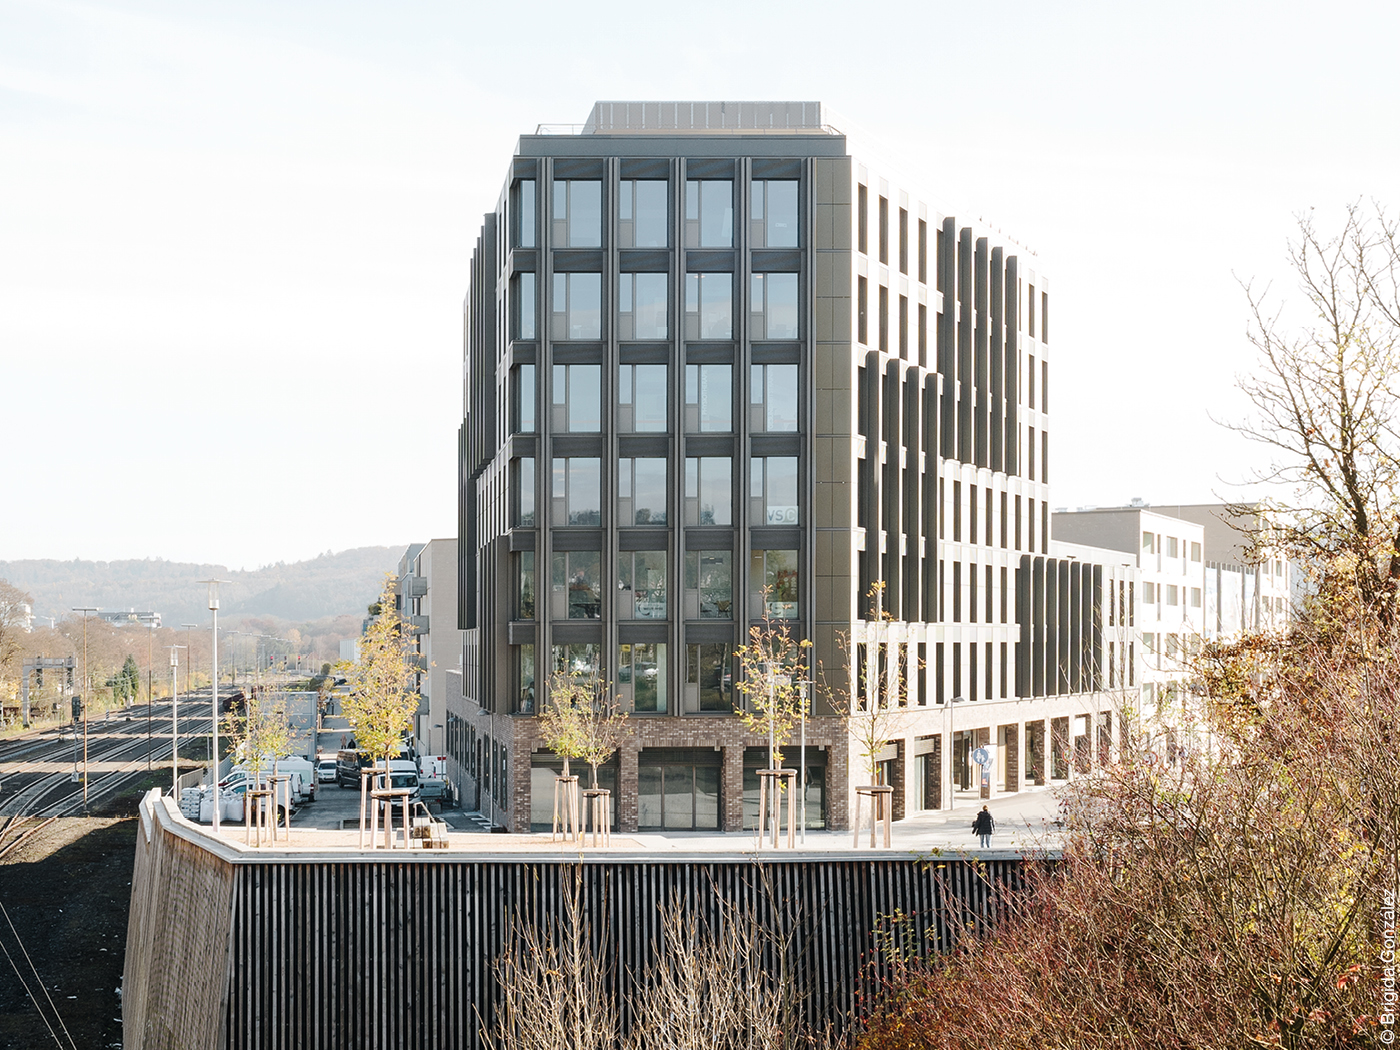 Bürohaus mit Photovoltaik-Fassade an Bahngleisen